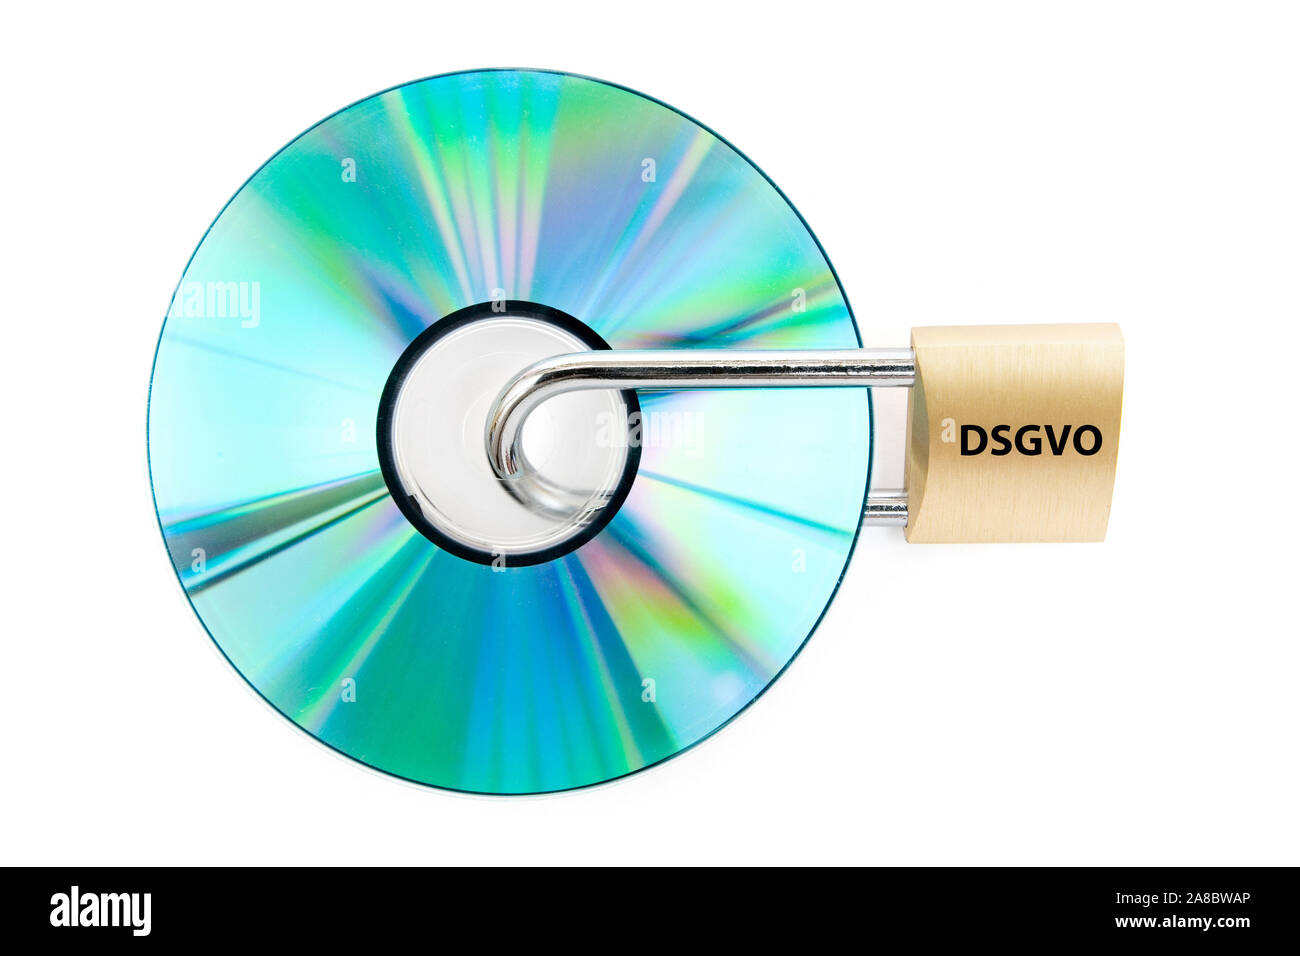 DVD, Daten, geschuetzt, Sicherheitsschloss, Aufschrift, DSGVO, Stock Photo